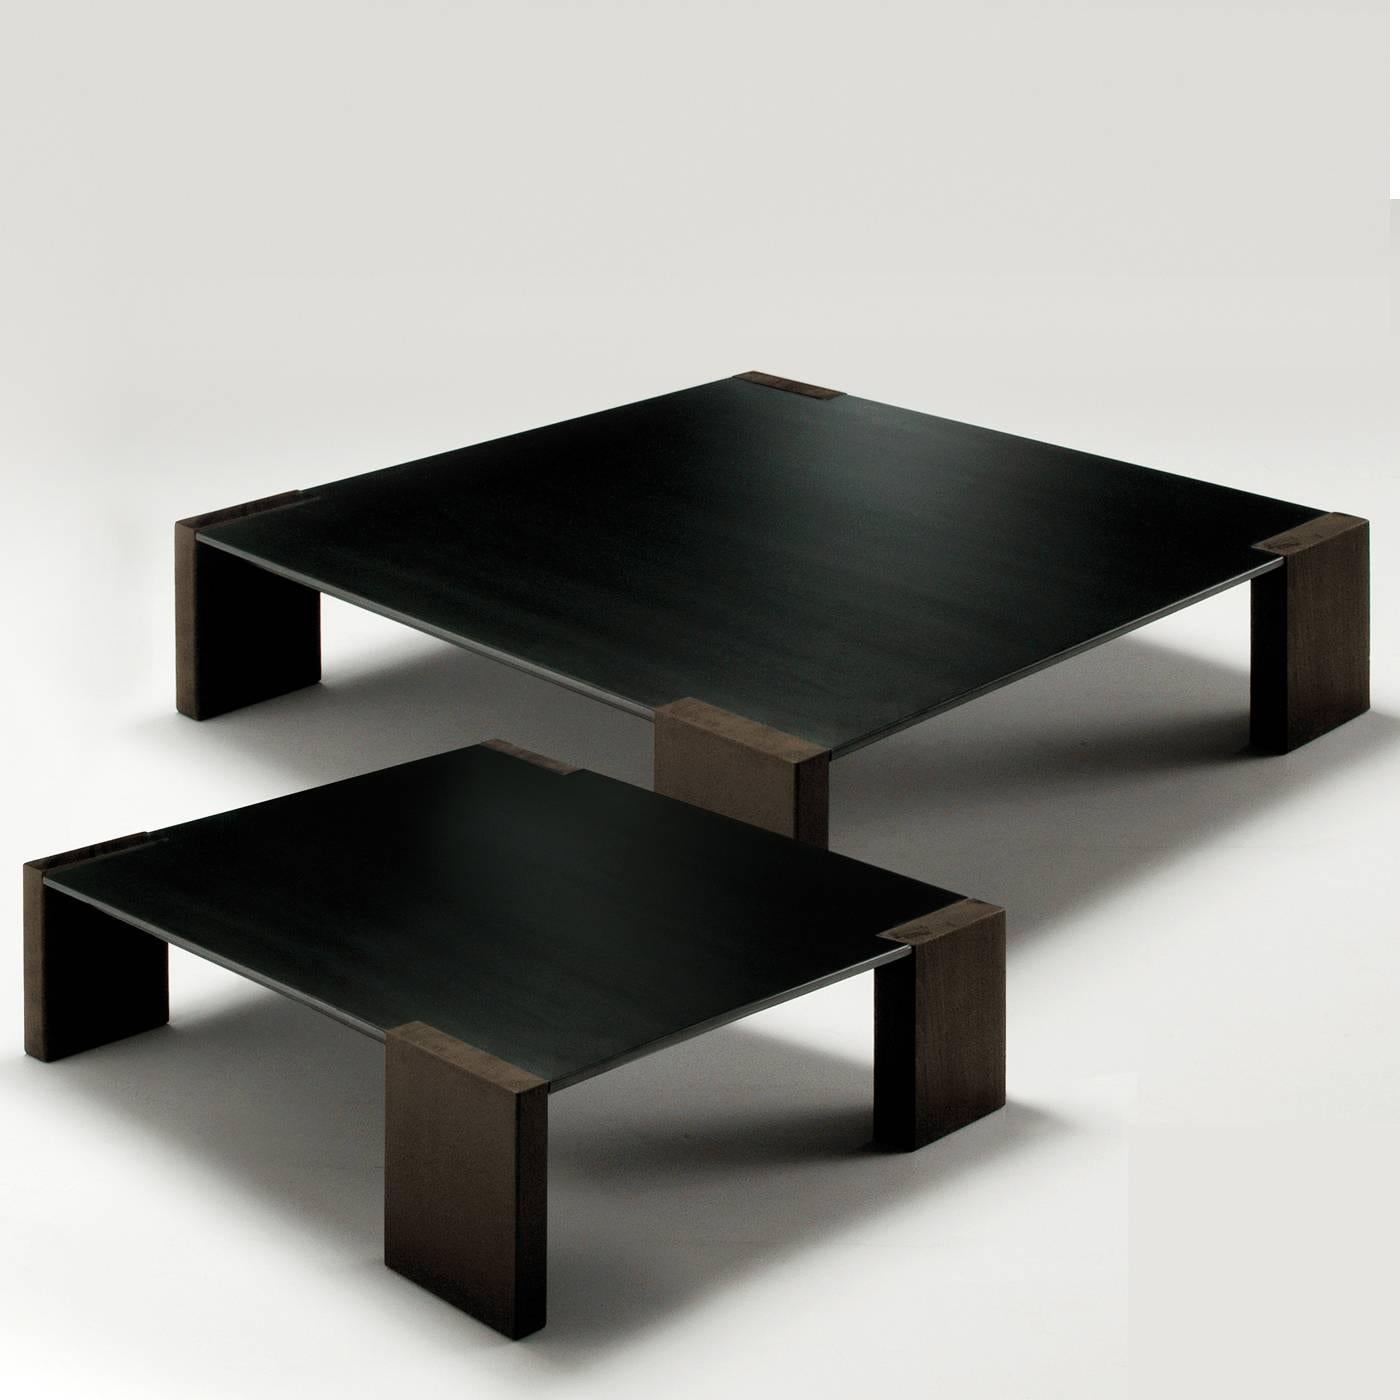 Dieser schöne quadratische Couchtisch ist in zwei Größen erhältlich. Die Tischplatte ist aus natürlichem Stahl, der speziell oxidiert wurde, um die unregelmäßigen schwarzen Oberflächen und die Eigenschaften des Rohmaterials zu betonen, und